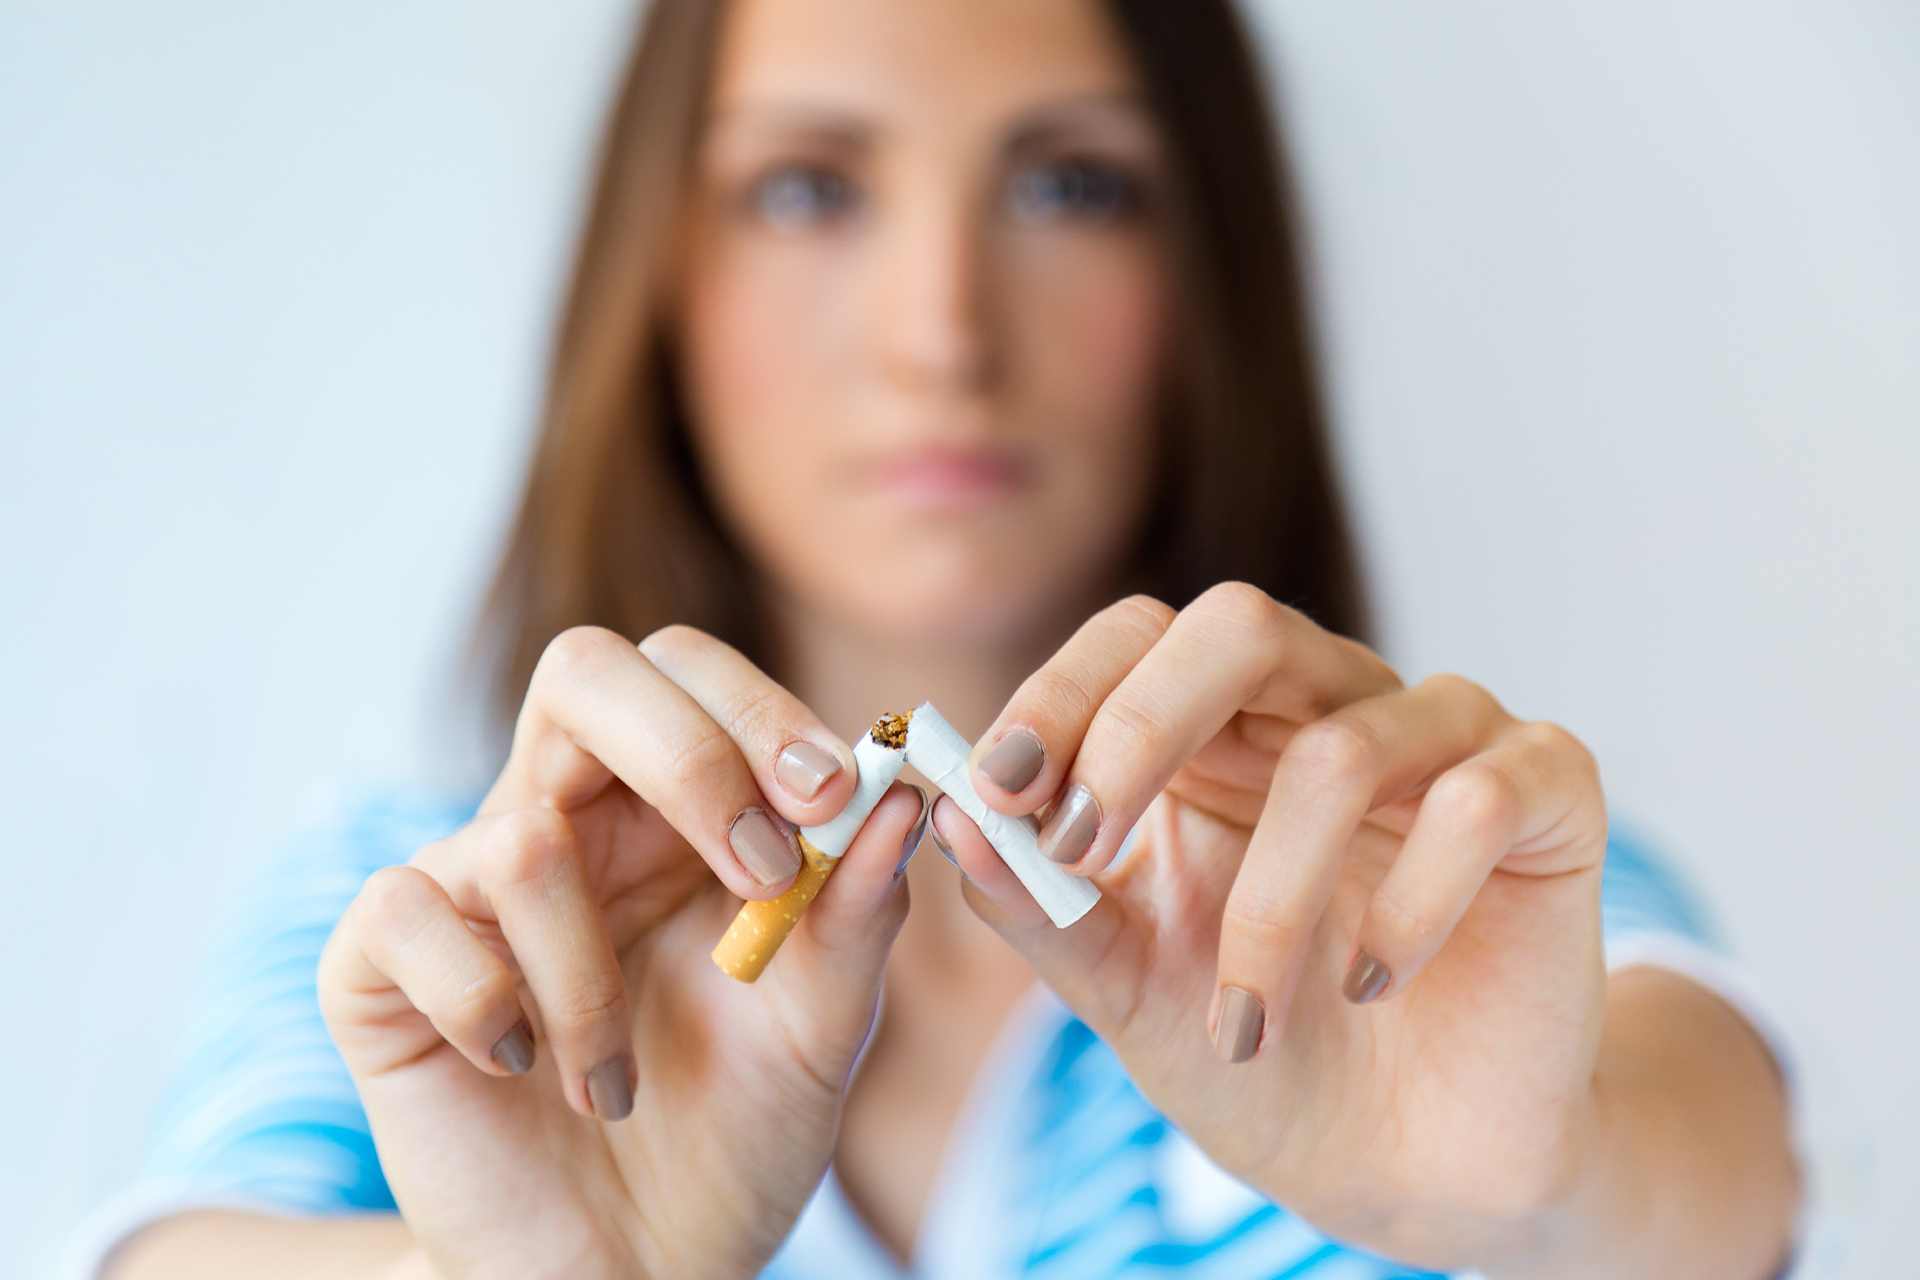 Woman quitting smoking